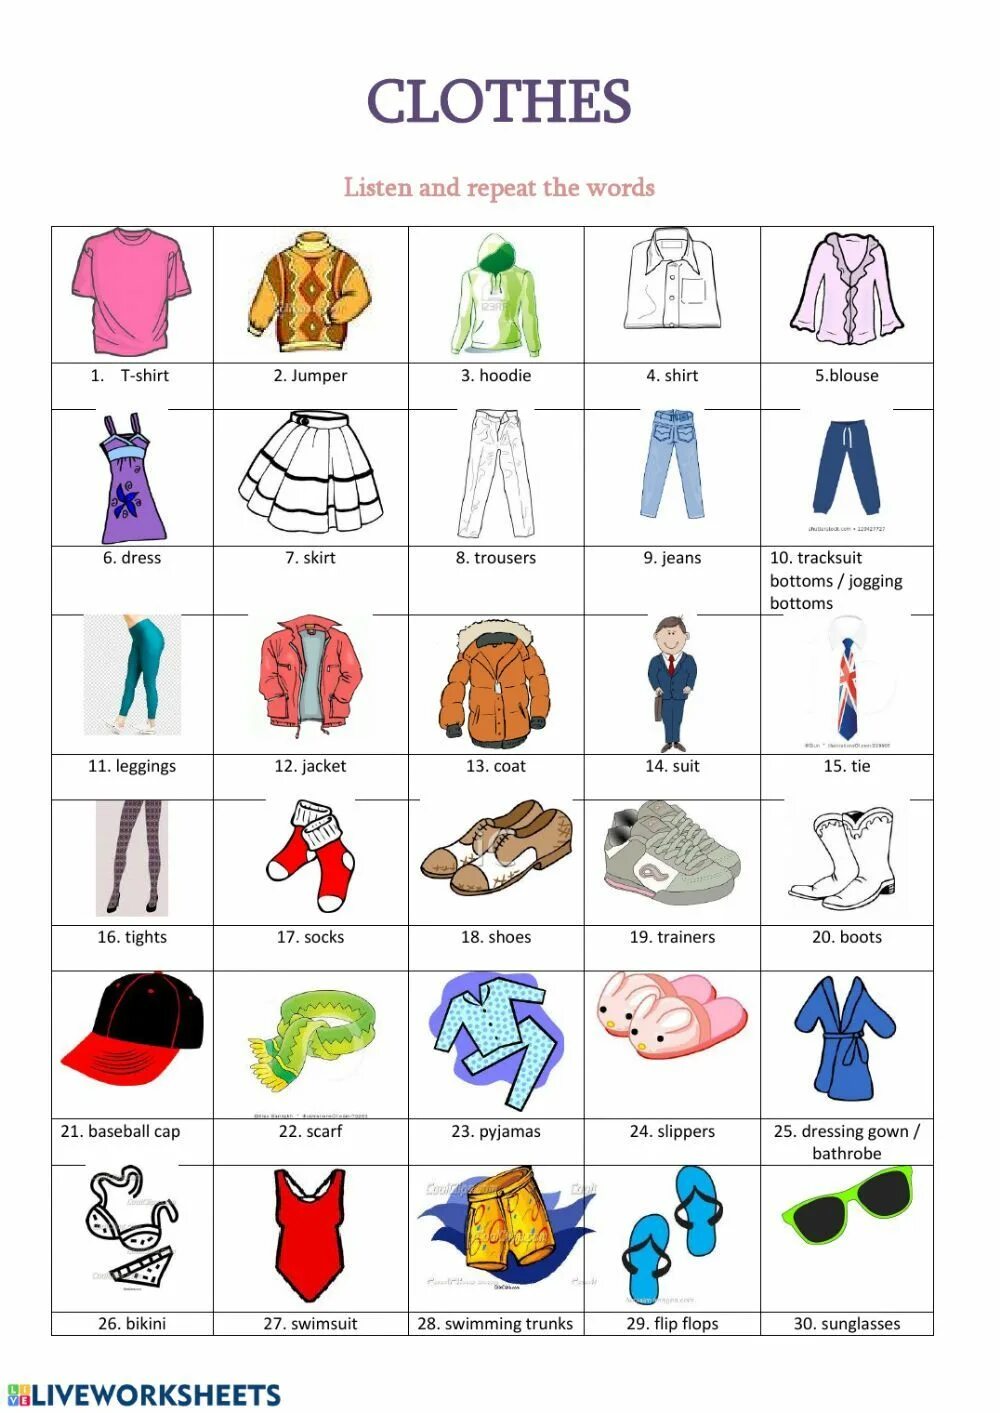 Картинки одежды на английском языке. Одежда на английском. Vocabulary одежда. Разная одежда на английском. Одежда на английском для детей.